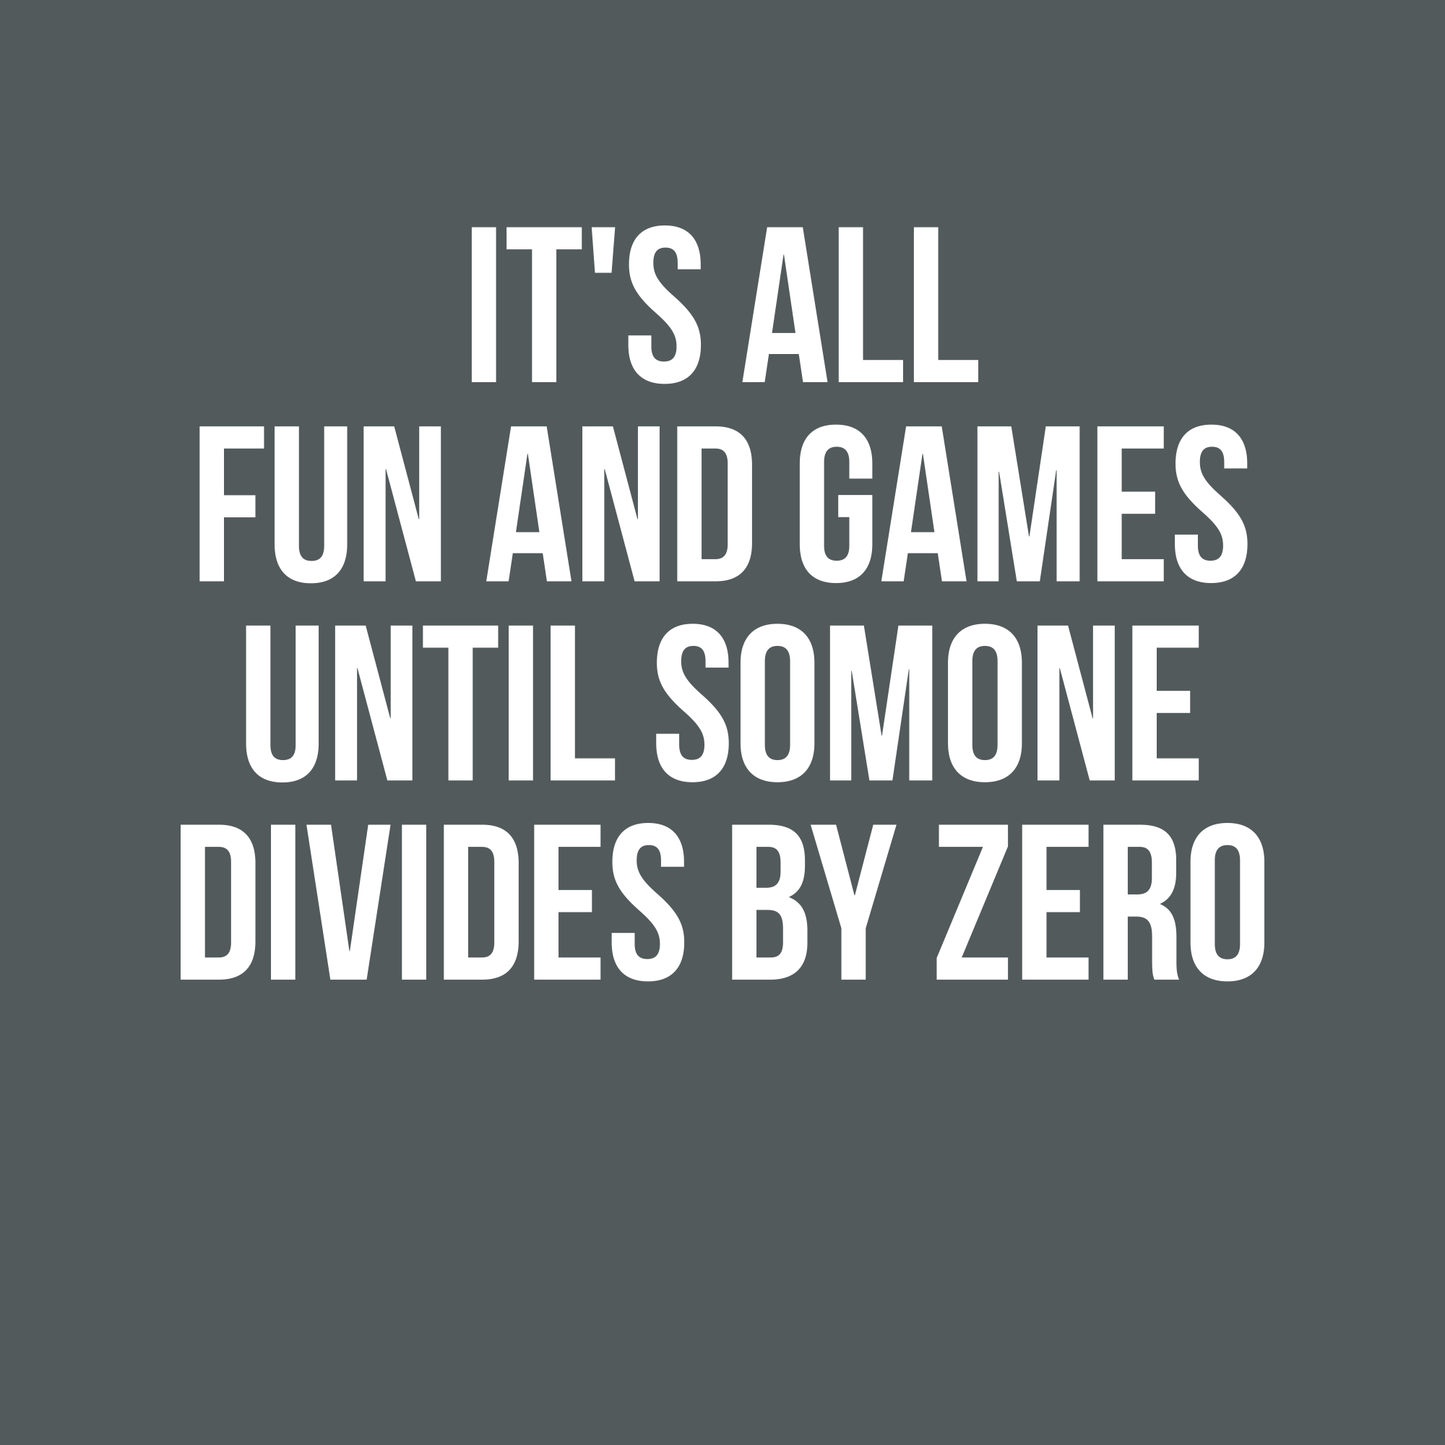 Todo es diversión y juegos hasta que alguien lo divide por cero